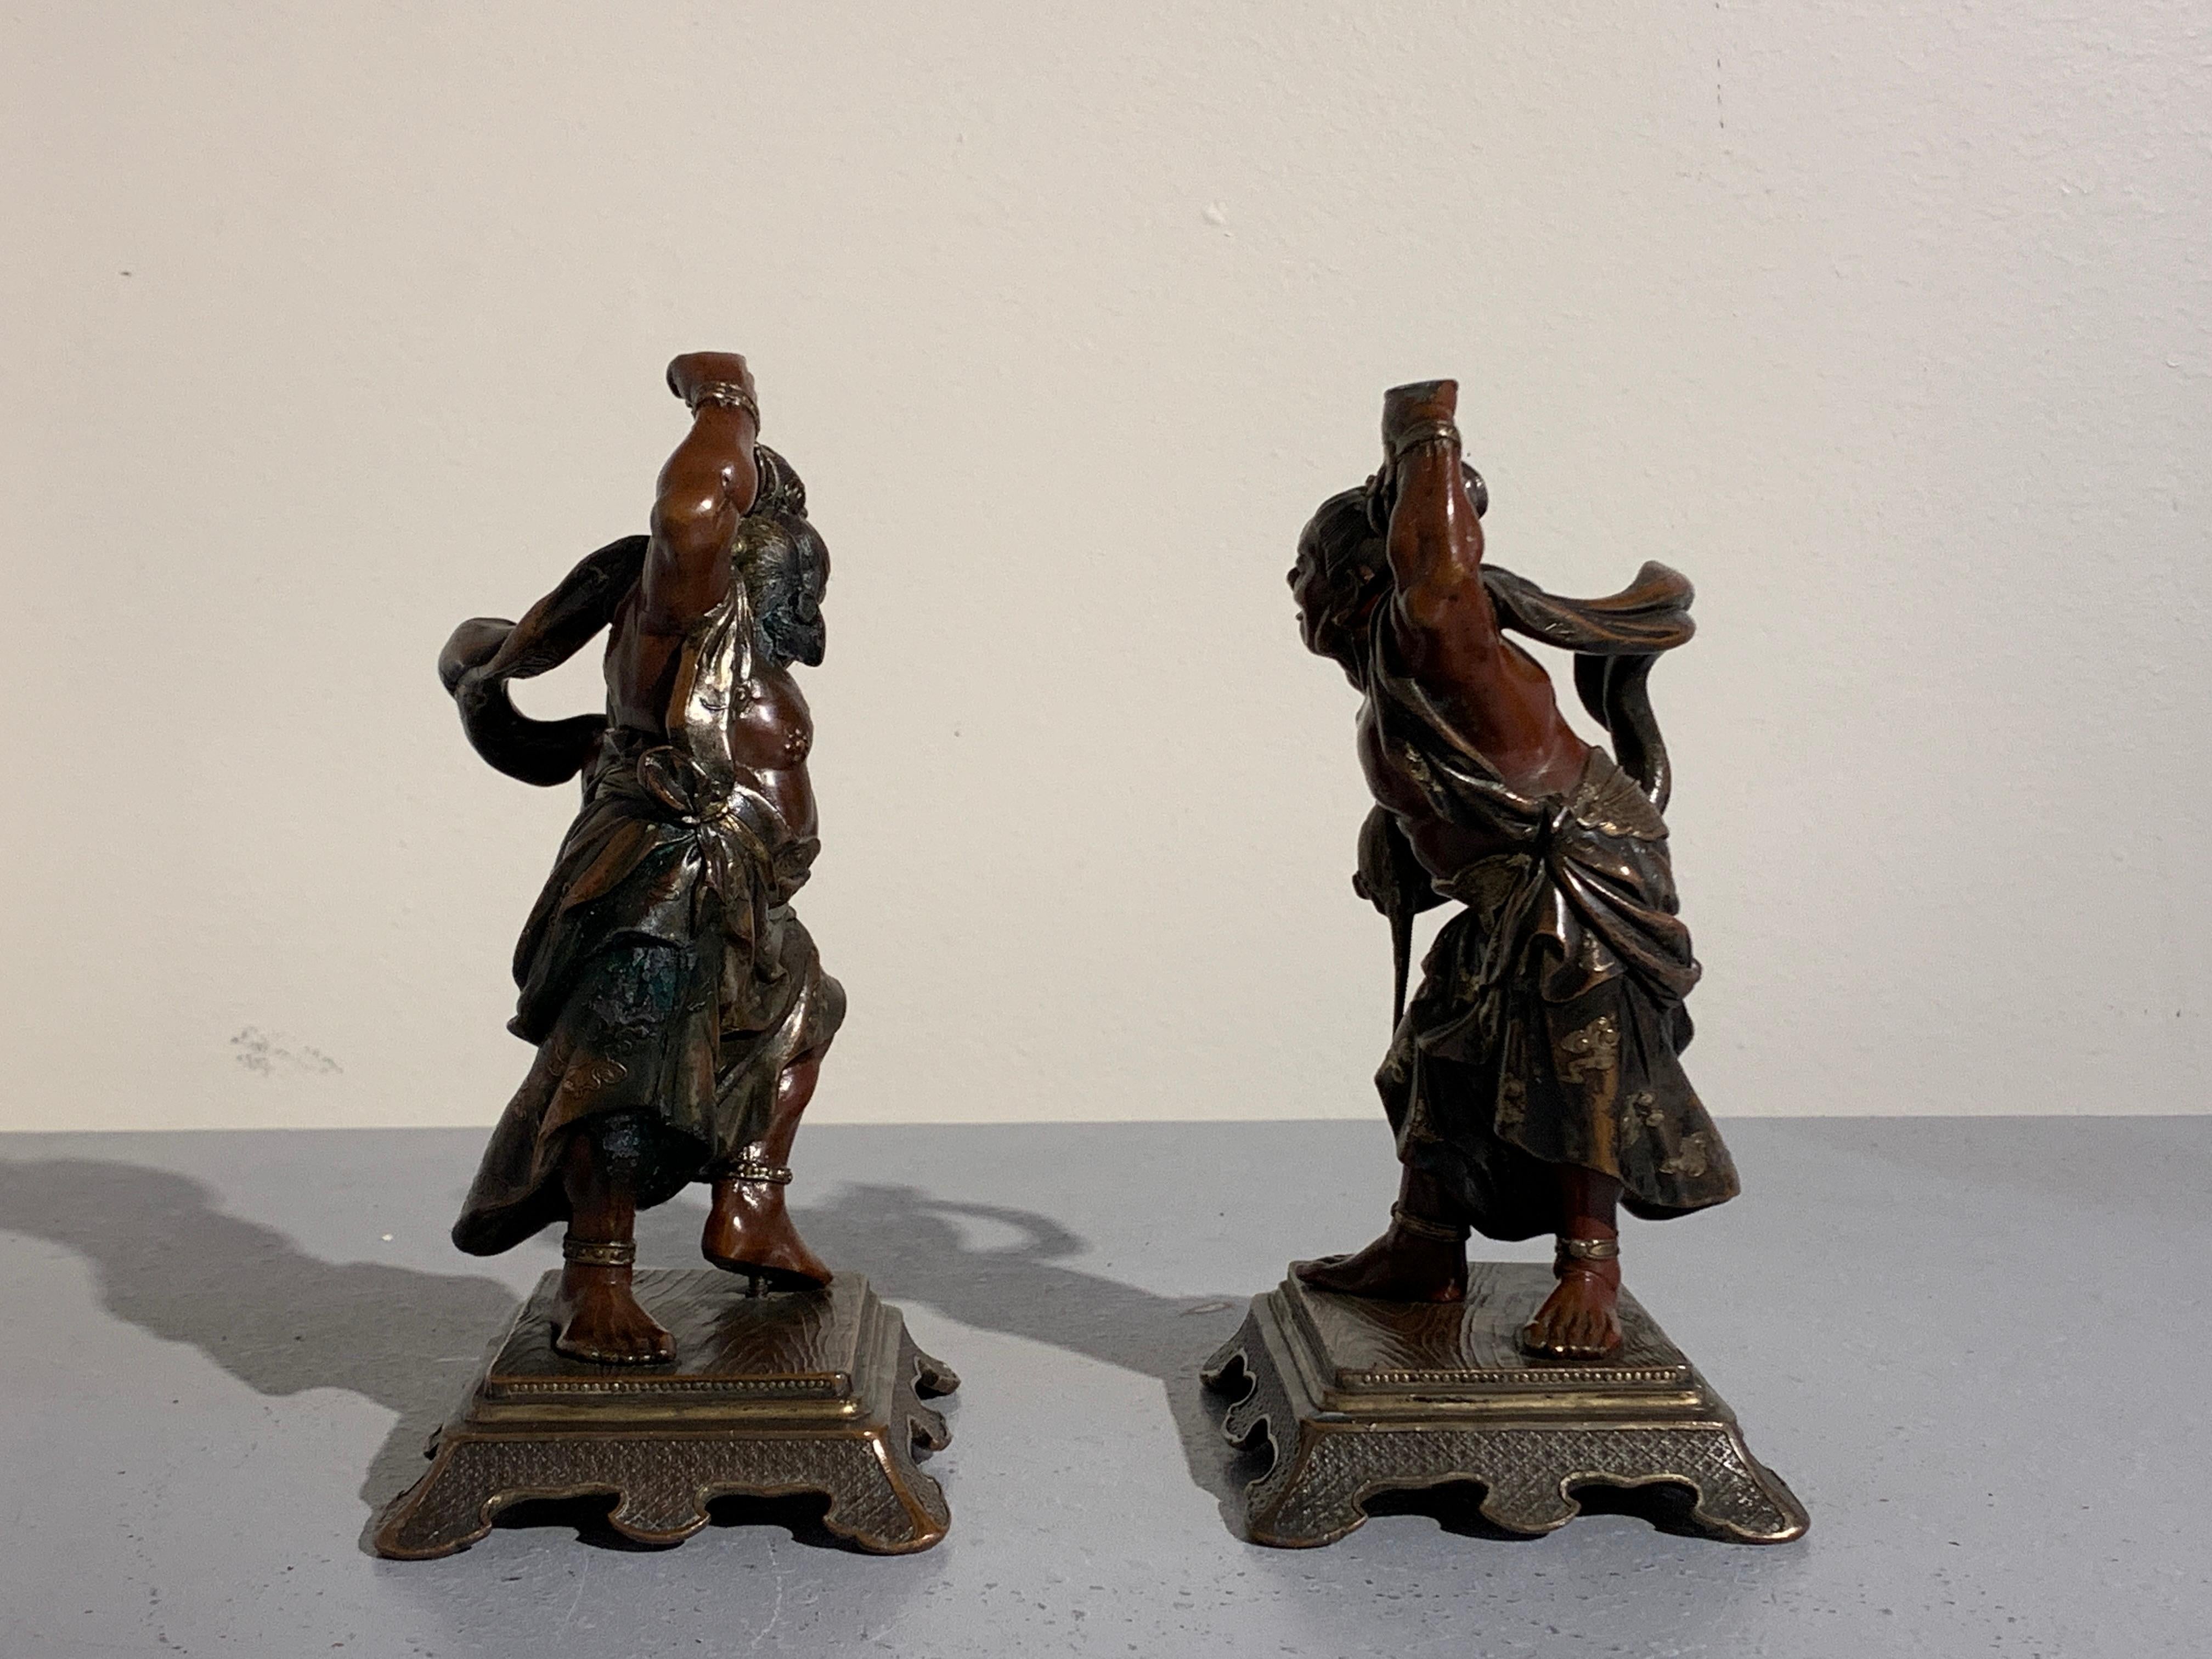 Ein gut gegossenes Paar japanischer Okimono-Figuren aus gemischtem Metall von buddhistischen Wächtern, bekannt als Nio oder Dharmapala, Beschützer des buddhistischen Glaubens, Meiji-Zeit, Japan.

Die lächelnden Bronze Wächter Figuren zeigen ein